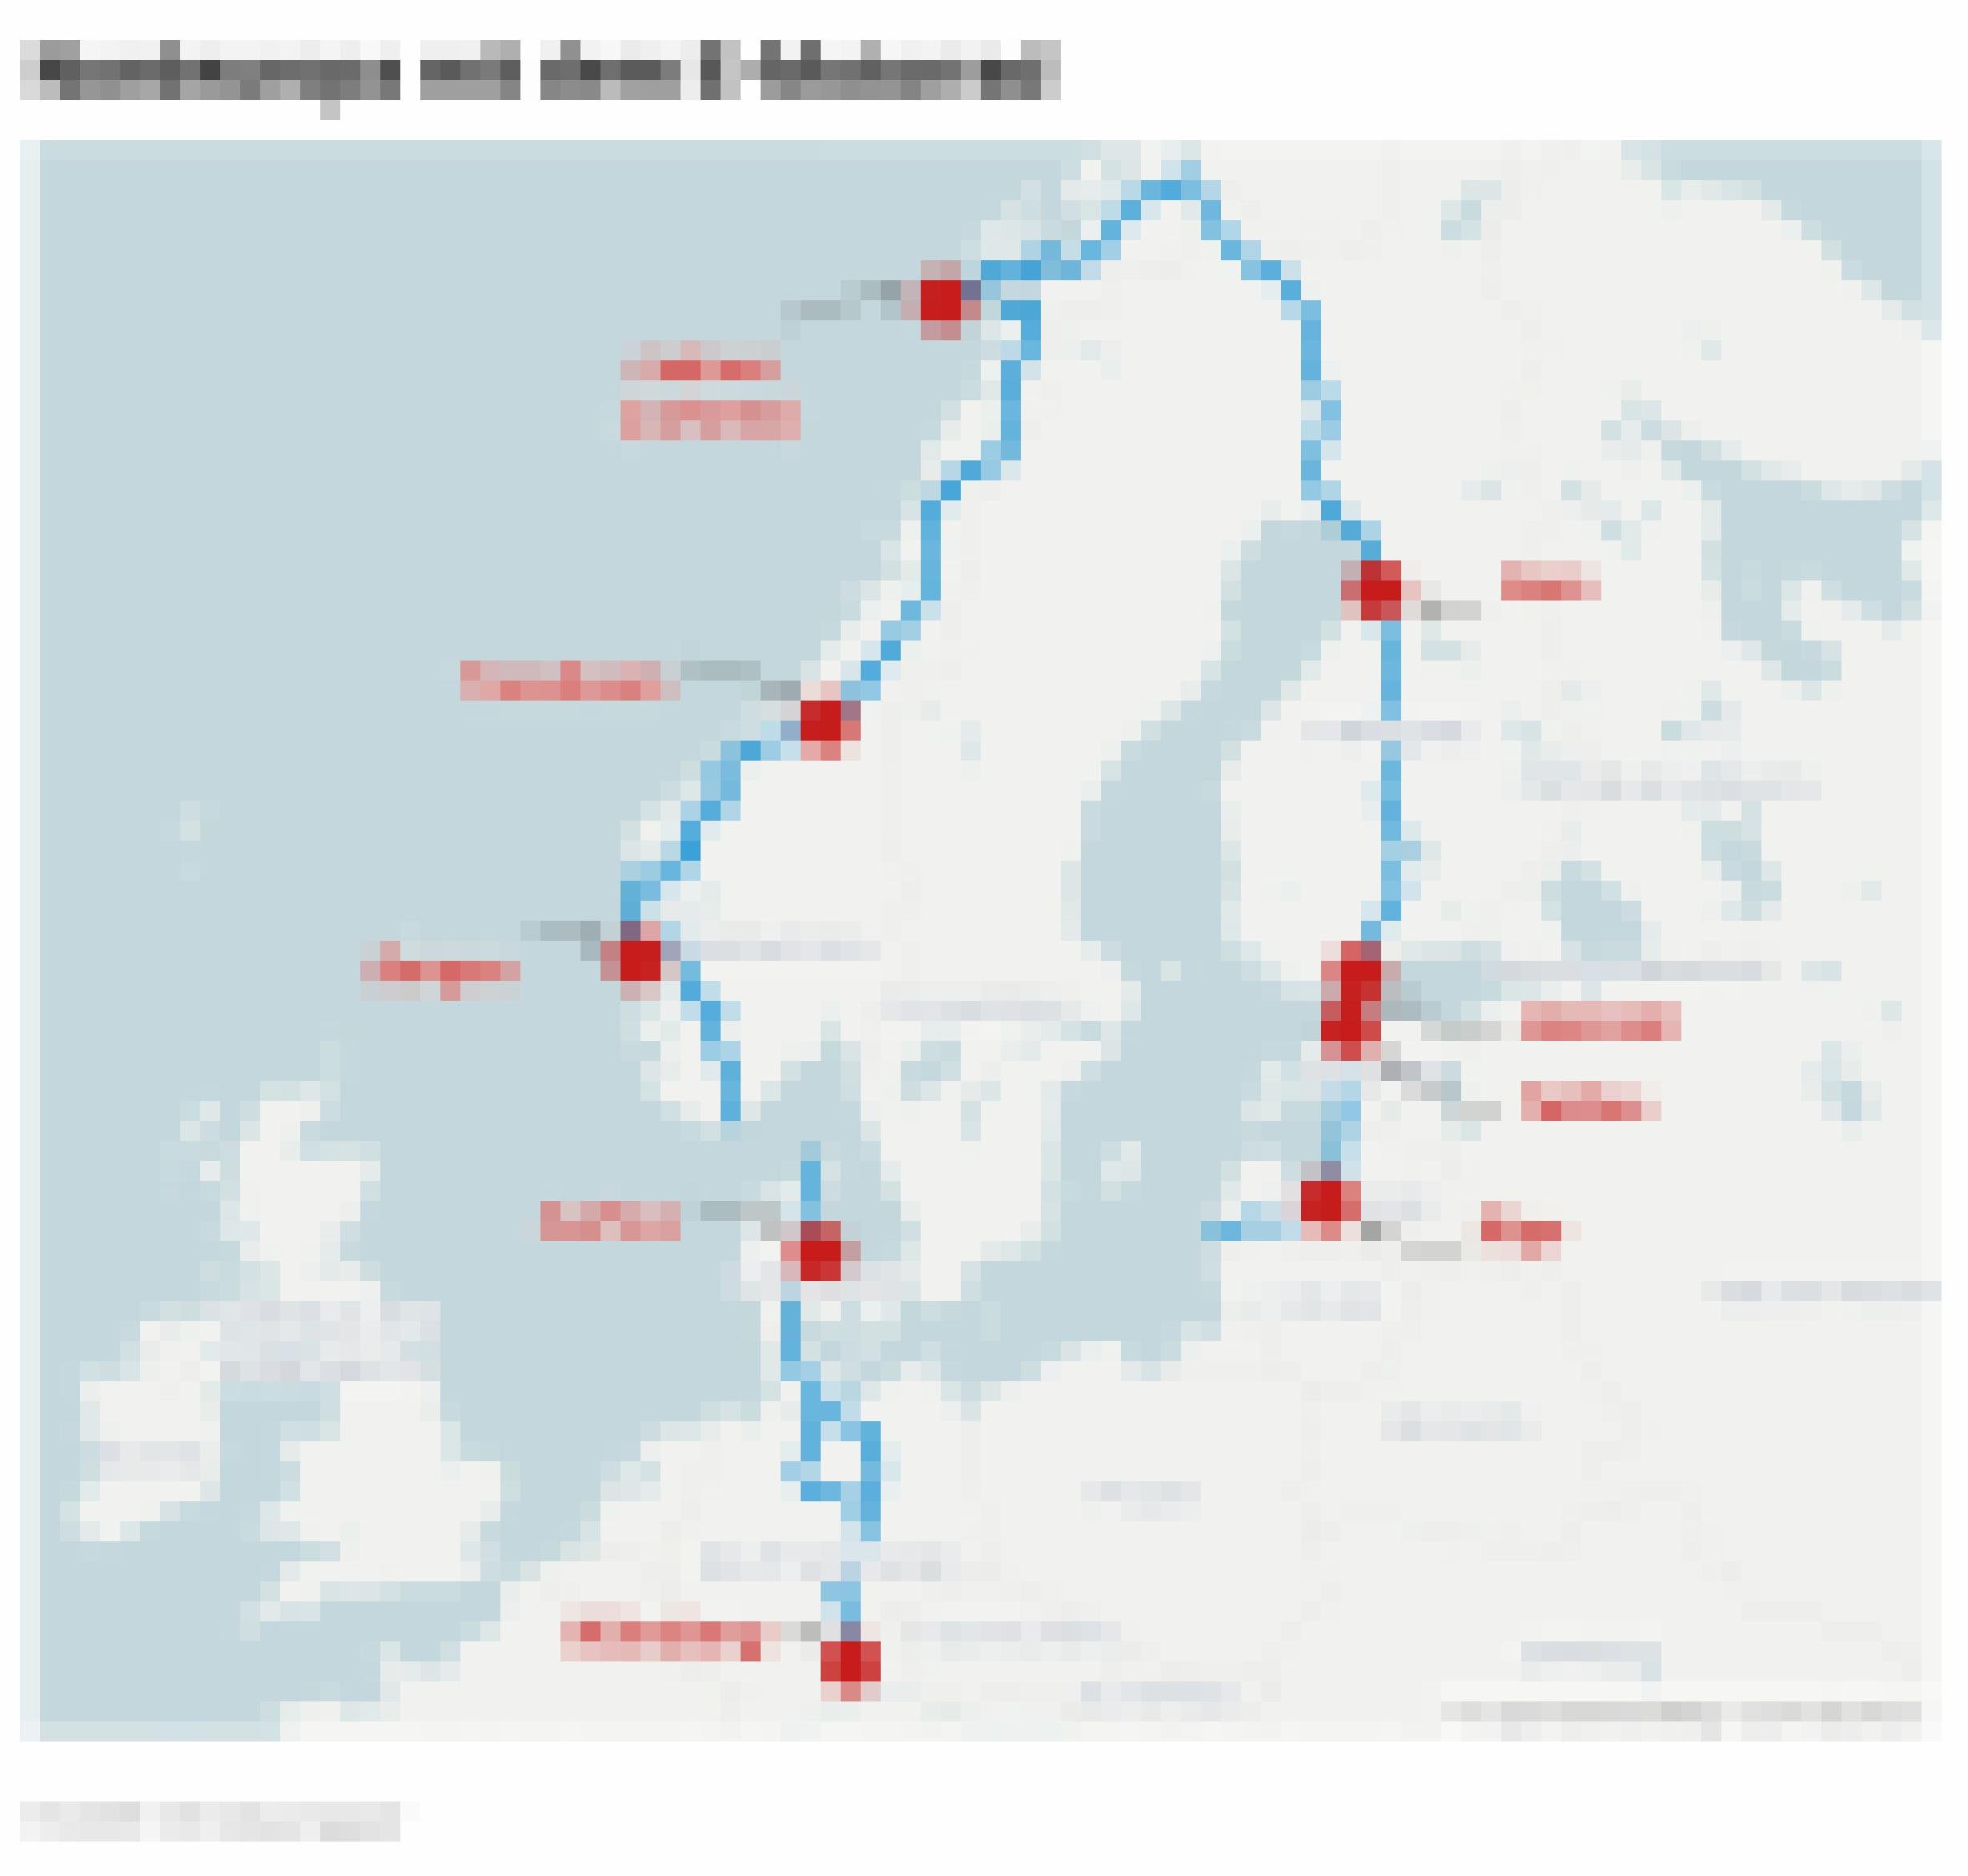 Landkarte zeigt die Strecke des Motorrad-Roadtrips durch Nordeuropa